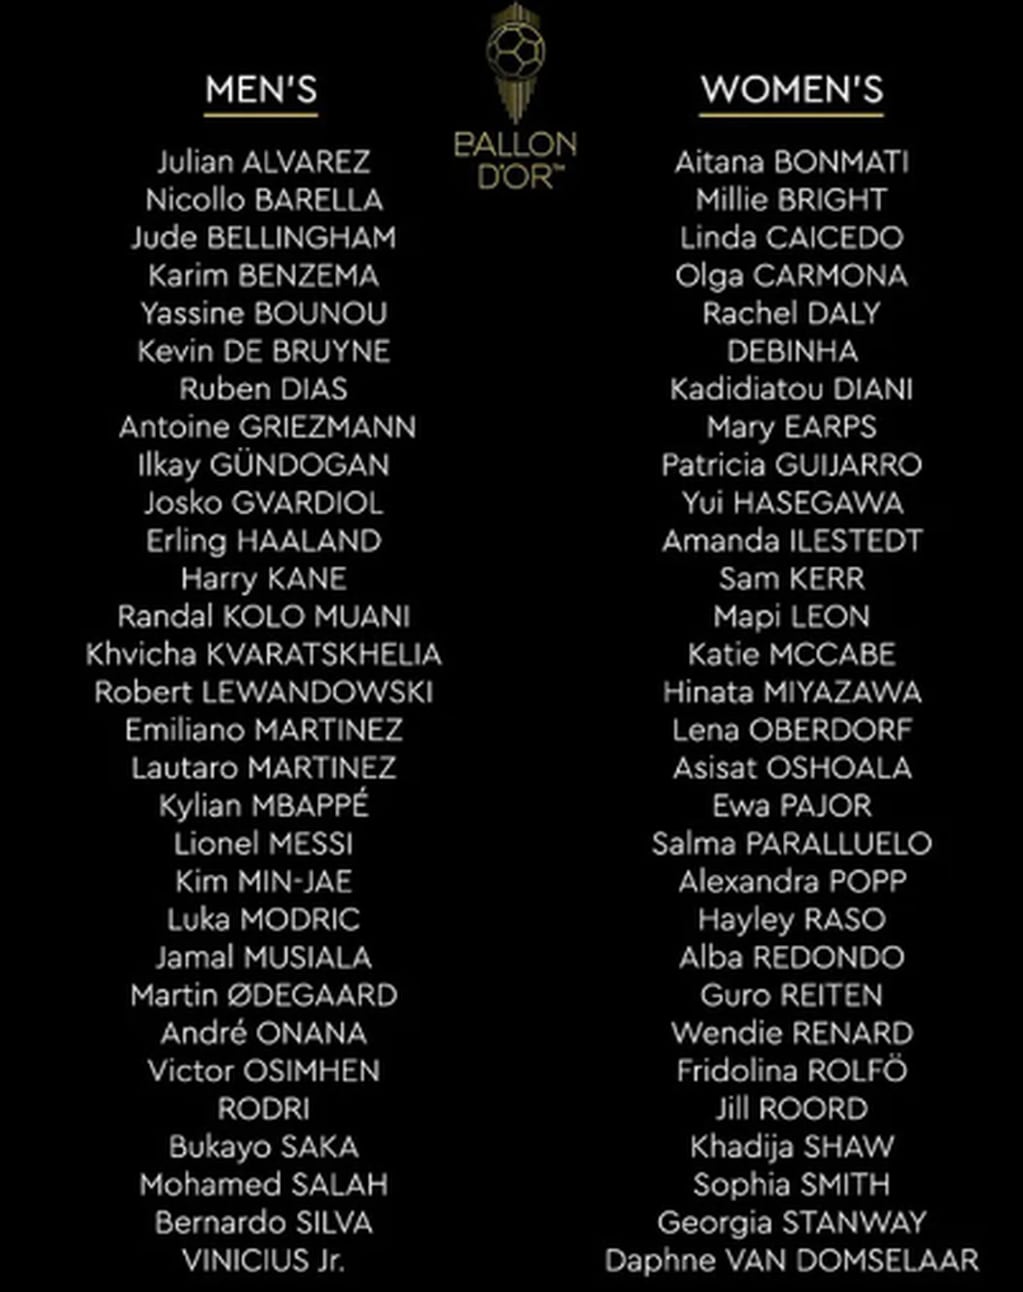 La lista completa de los nominados al Balón de Oro 2023.